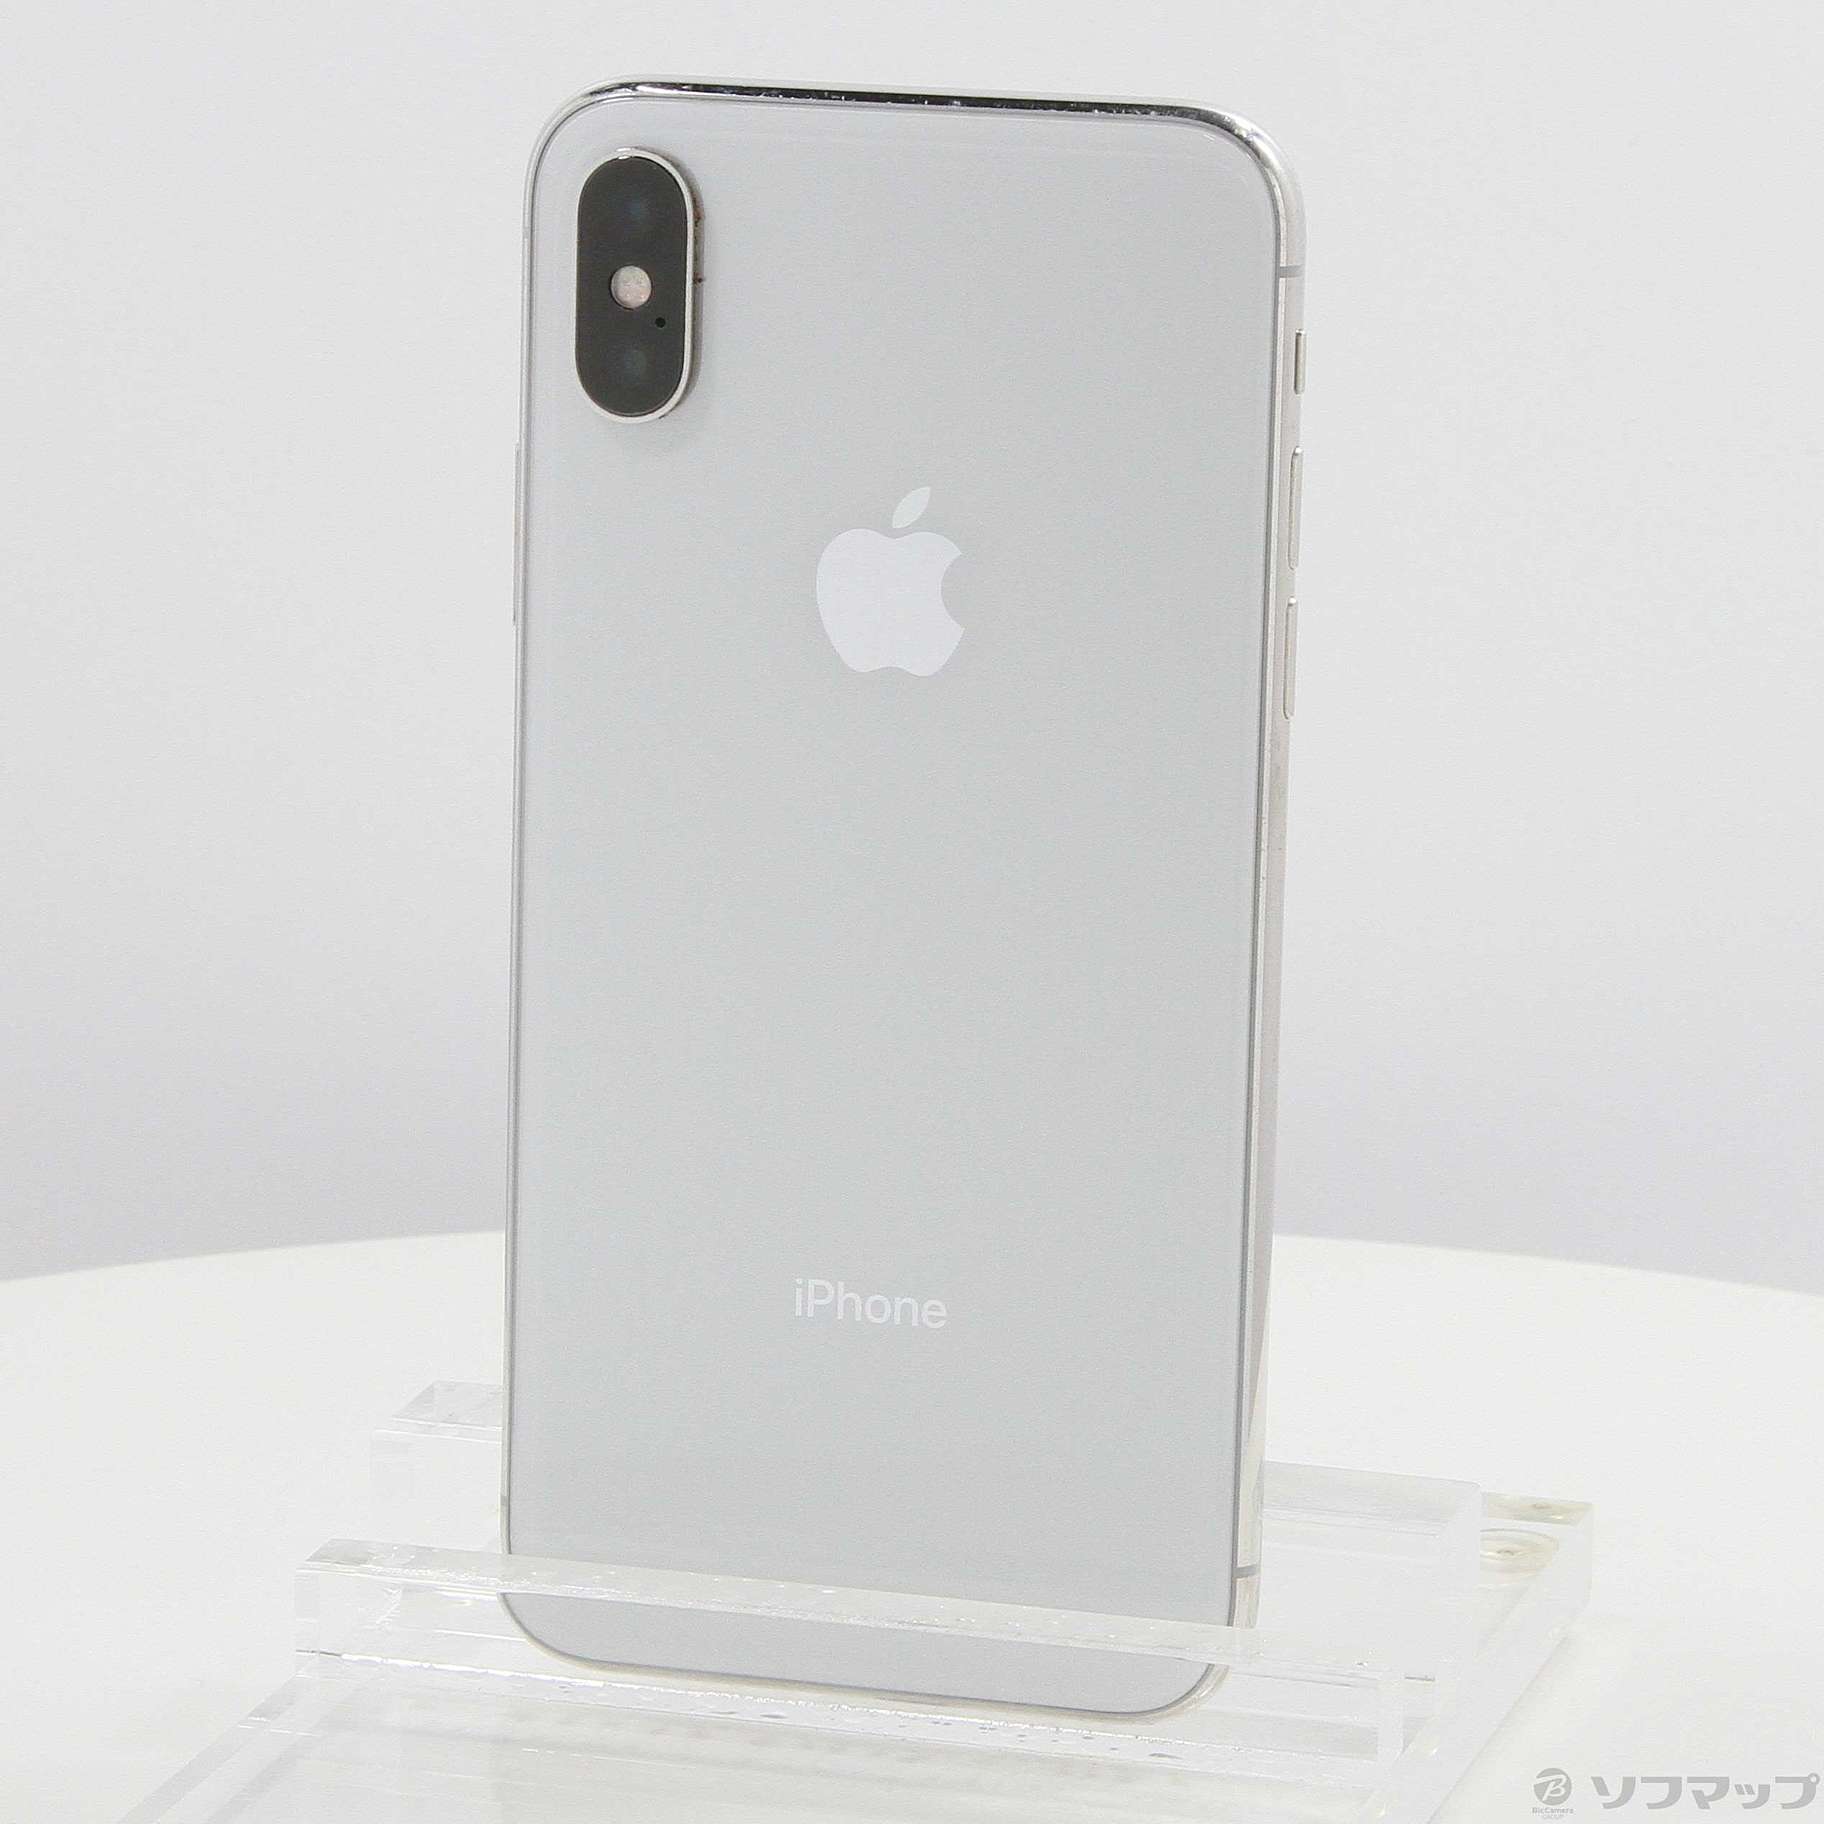 iPhoneX 256GB silver SIMフリー